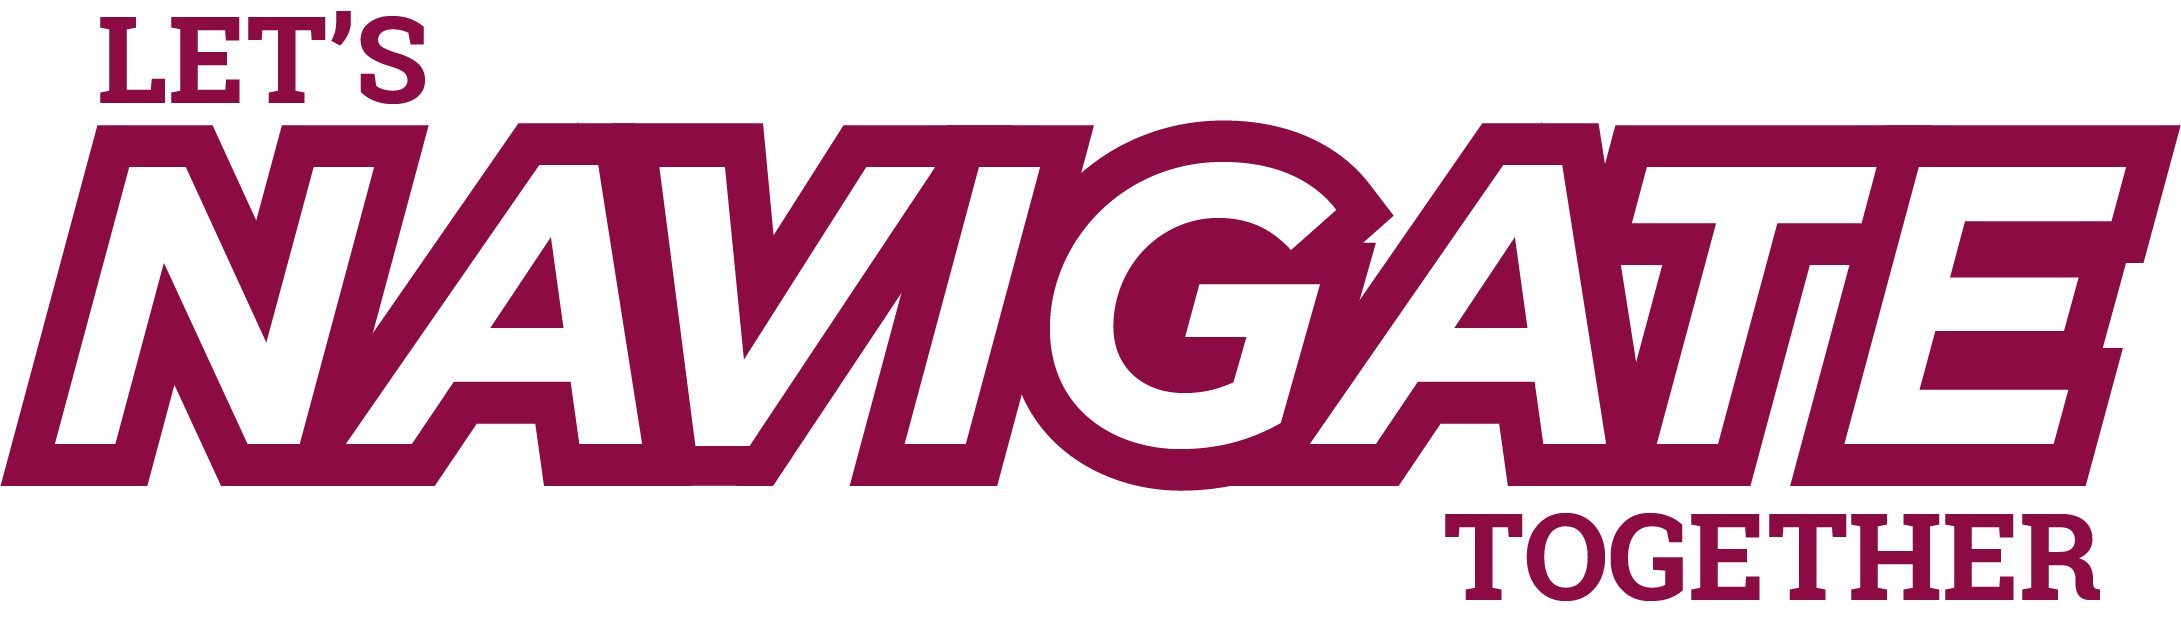 Navitage_logo.png